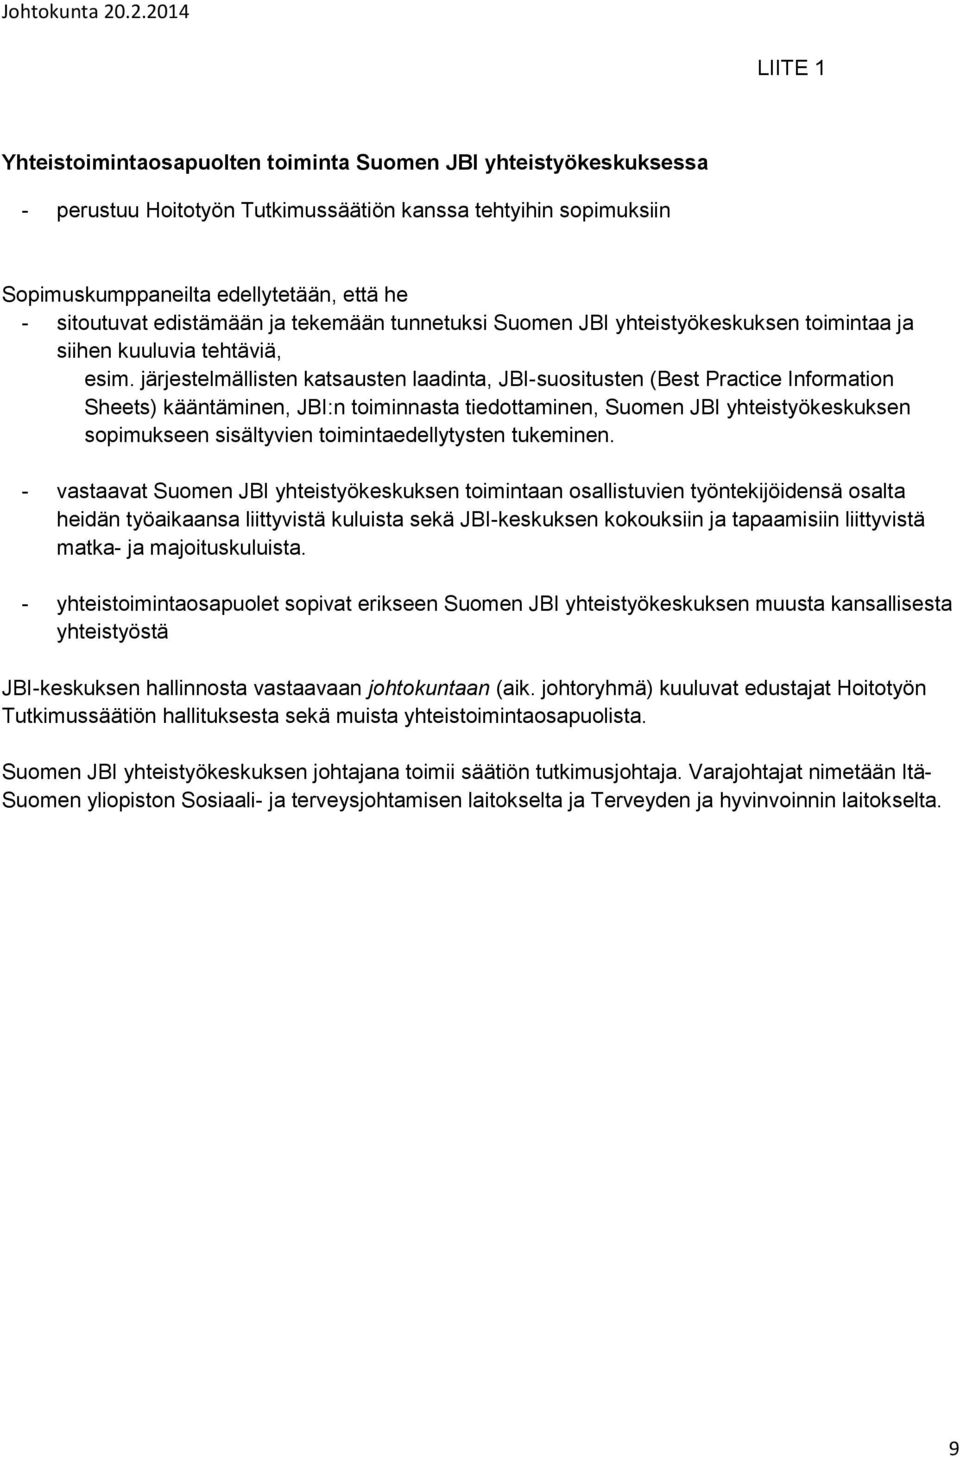 järjestelmällisten katsausten laadinta, JBI-suositusten (Best Practice Information Sheets) kääntäminen, JBI:n toiminnasta tiedottaminen, Suomen JBI yhteistyökeskuksen sopimukseen sisältyvien